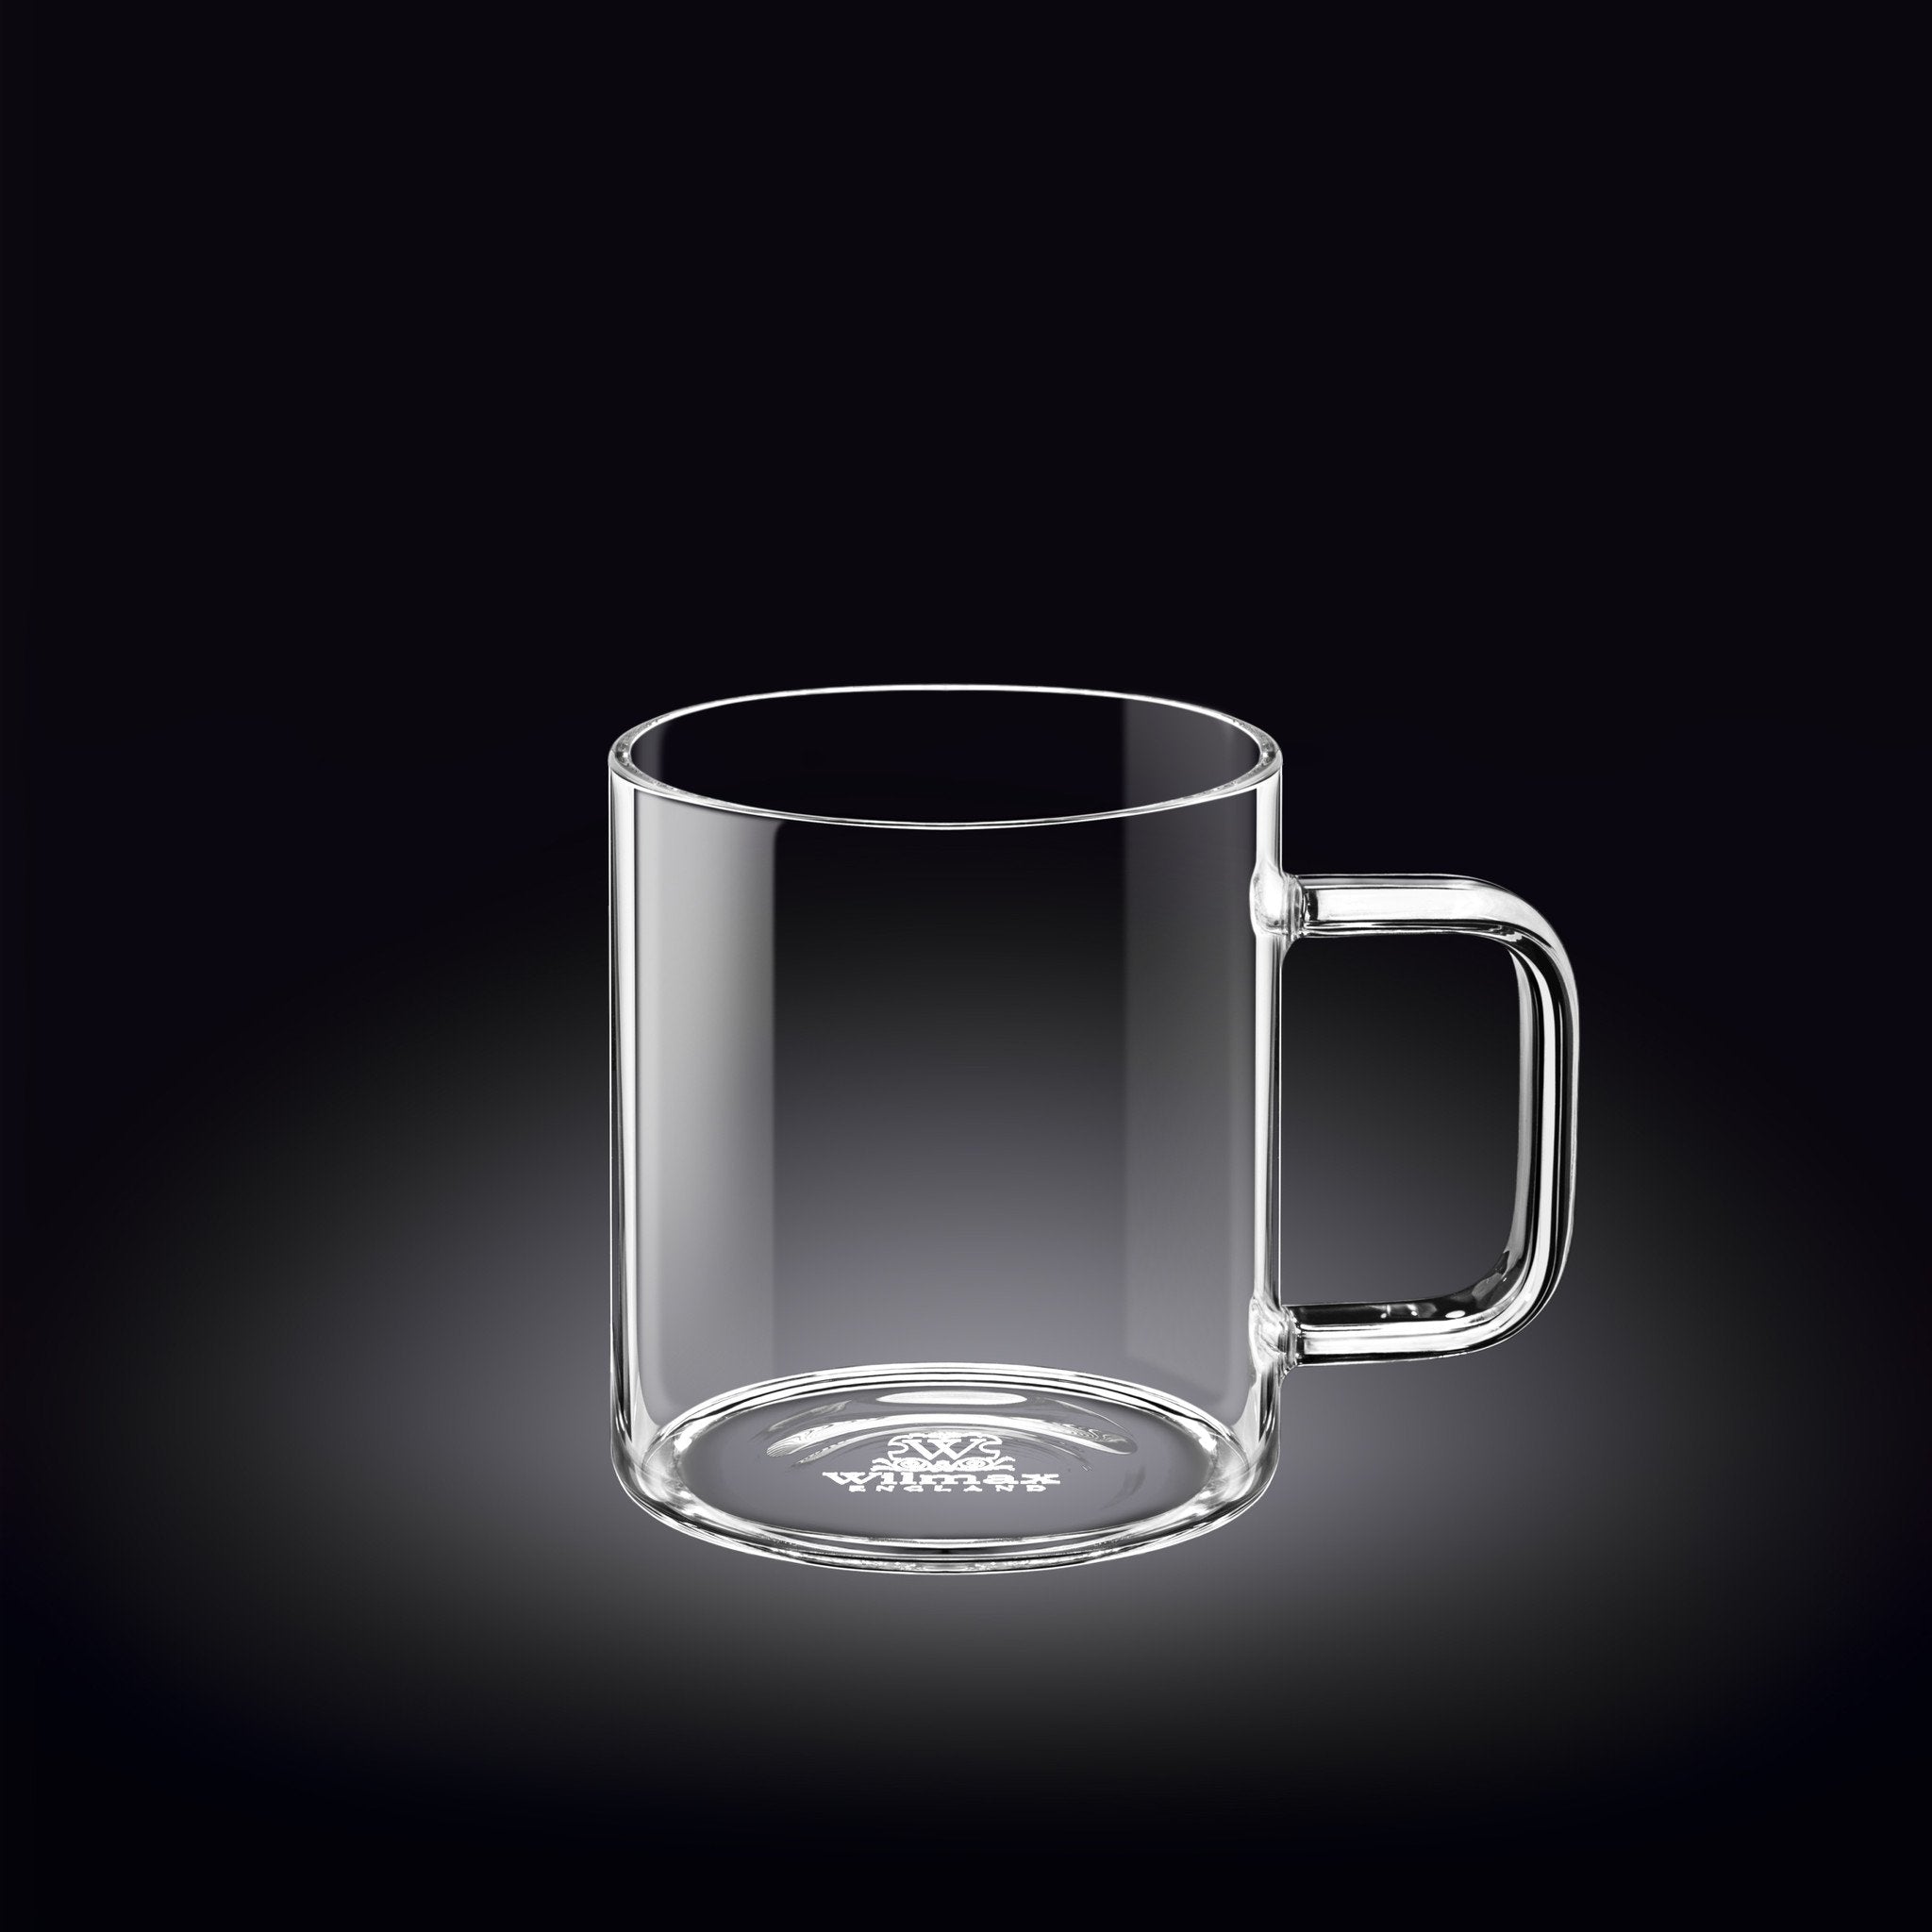 Wilmax WL-888606-A Mug 11 oz. 320 ml